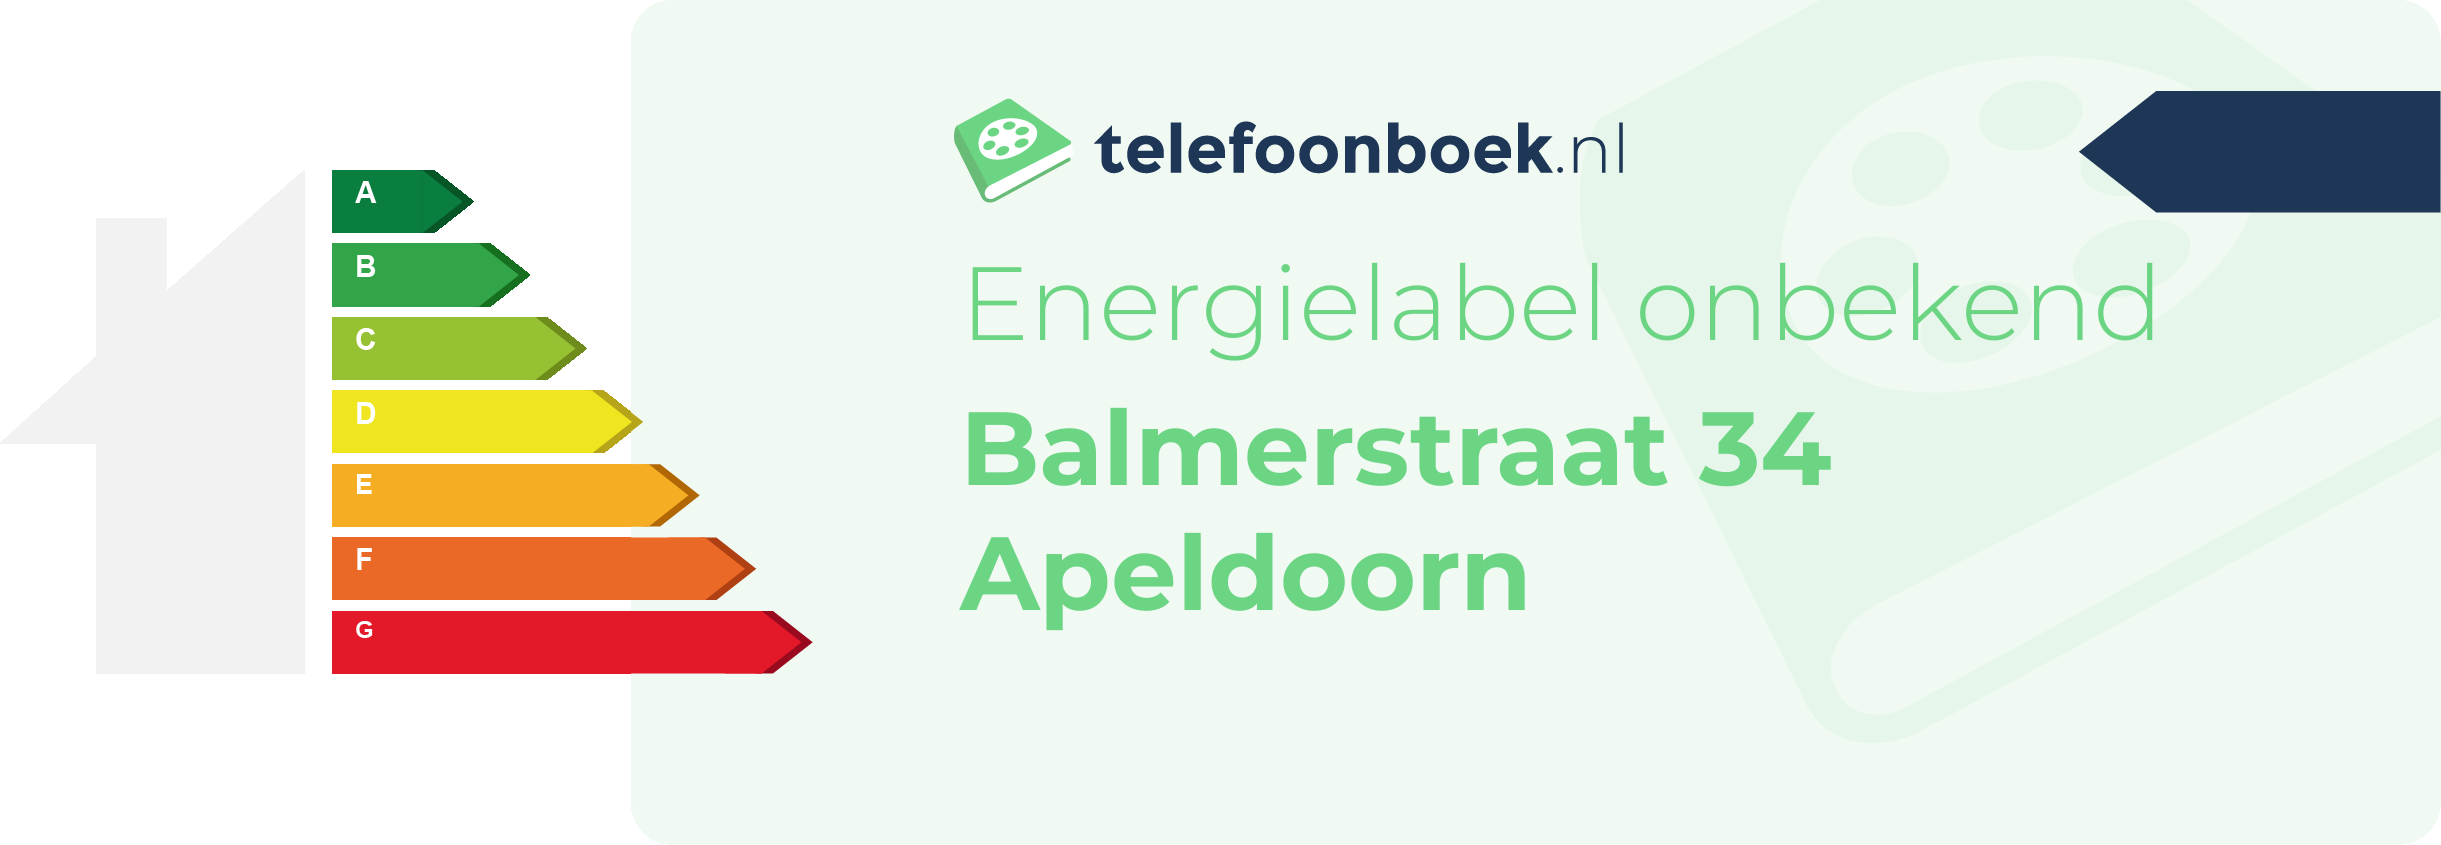 Energielabel Balmerstraat 34 Apeldoorn